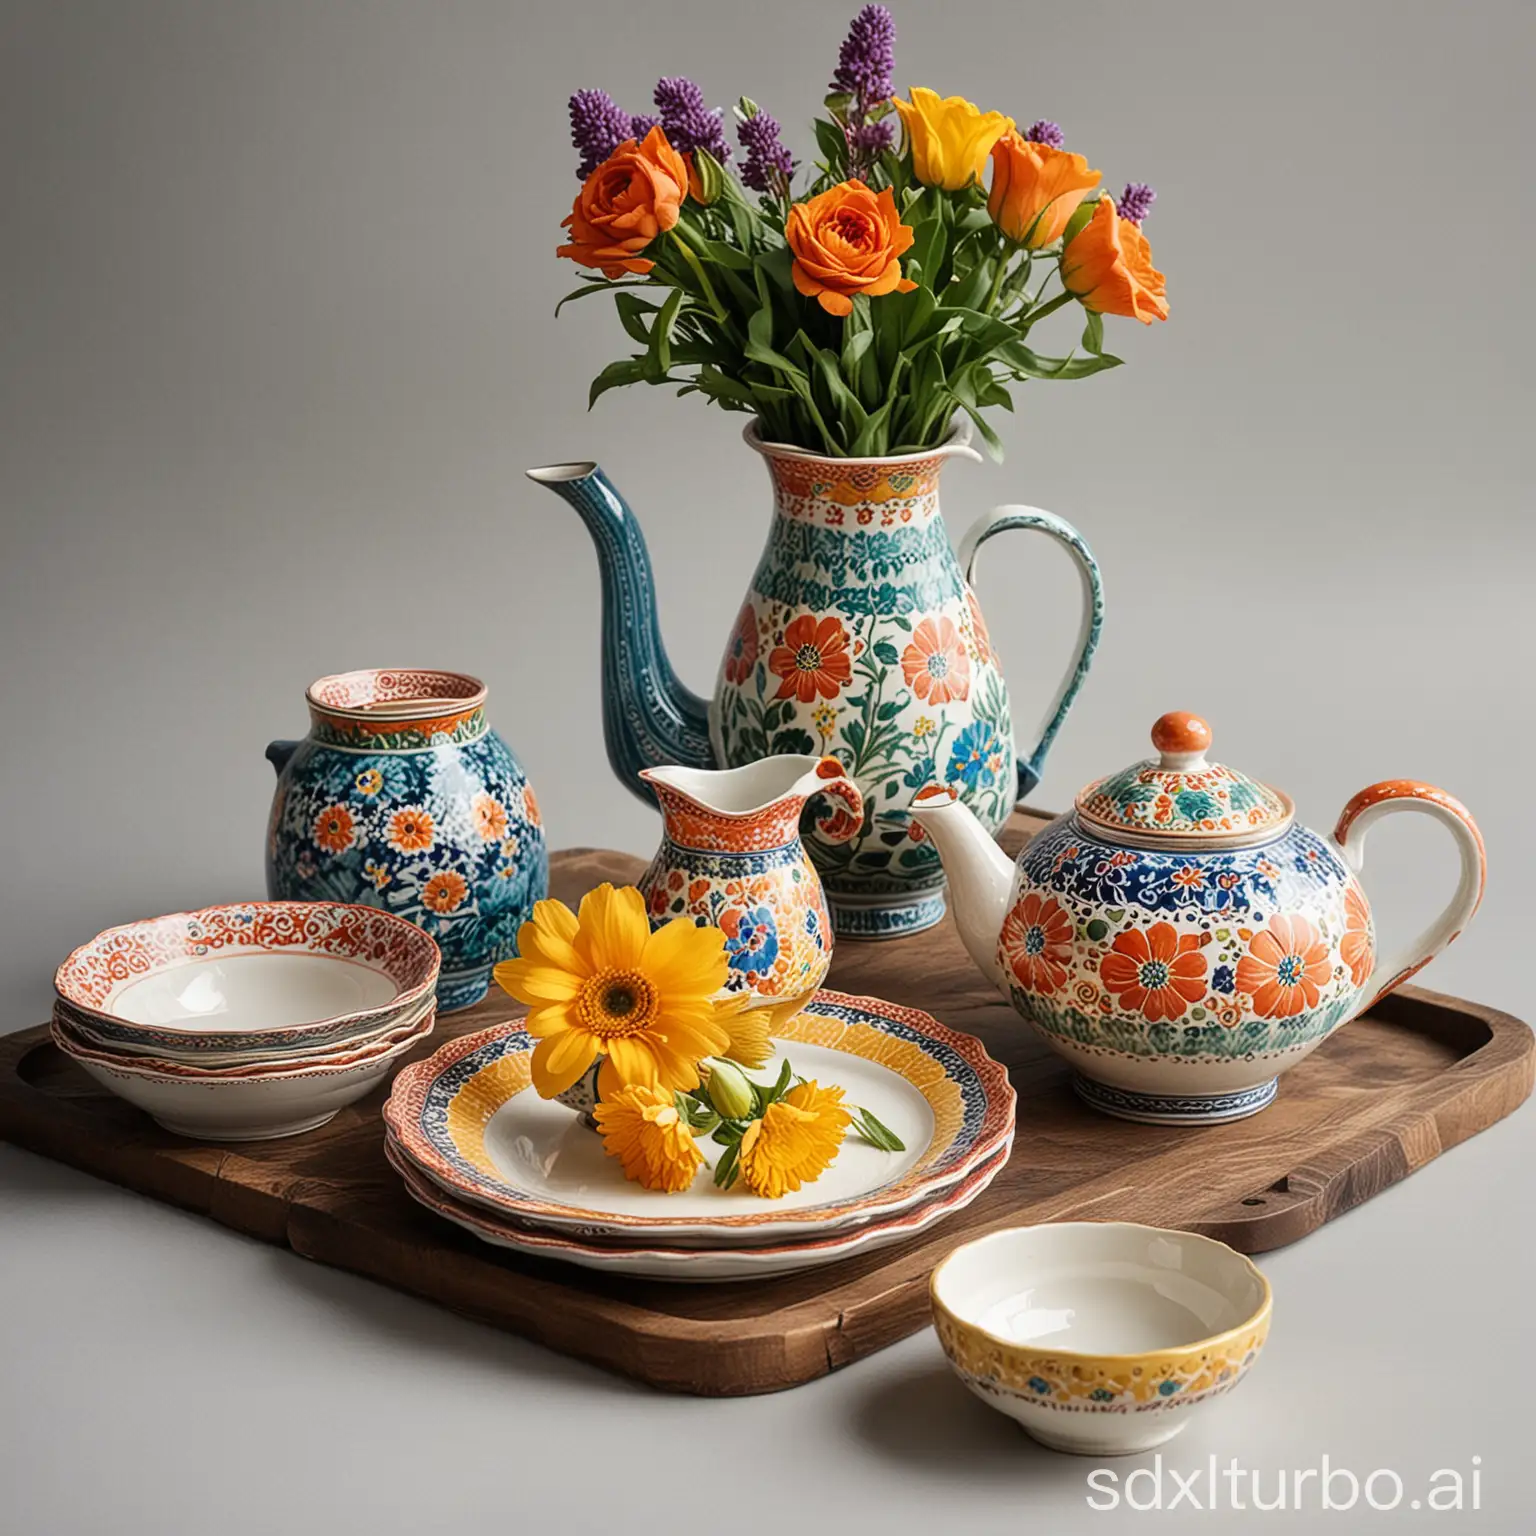 一套有花纹描边的餐具在中间，左边有个水壶，右边有个花瓶，瓶里插着彩色的花朵